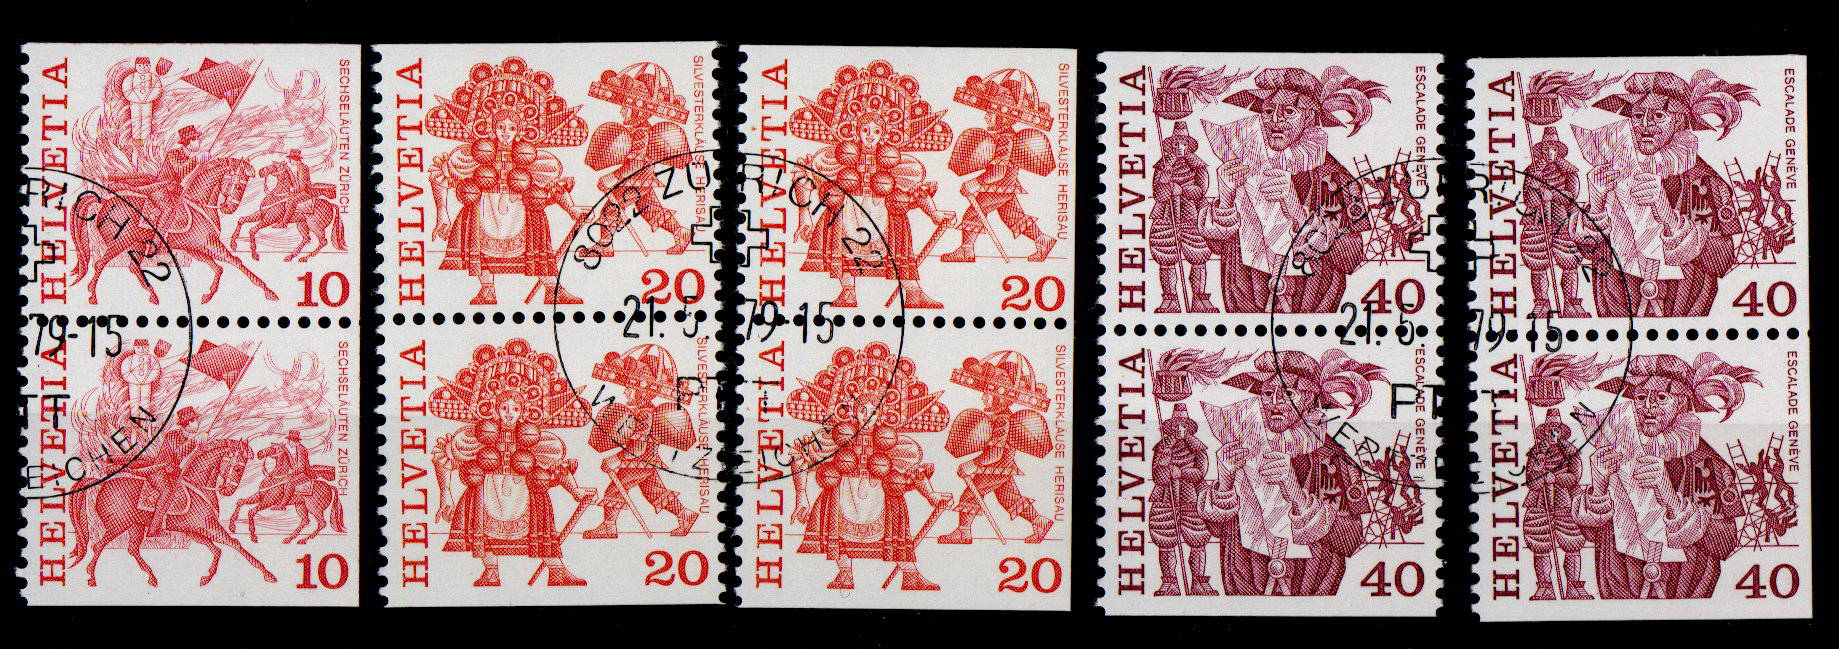 1979 Dauermarken aus Markenheftchen ET gest